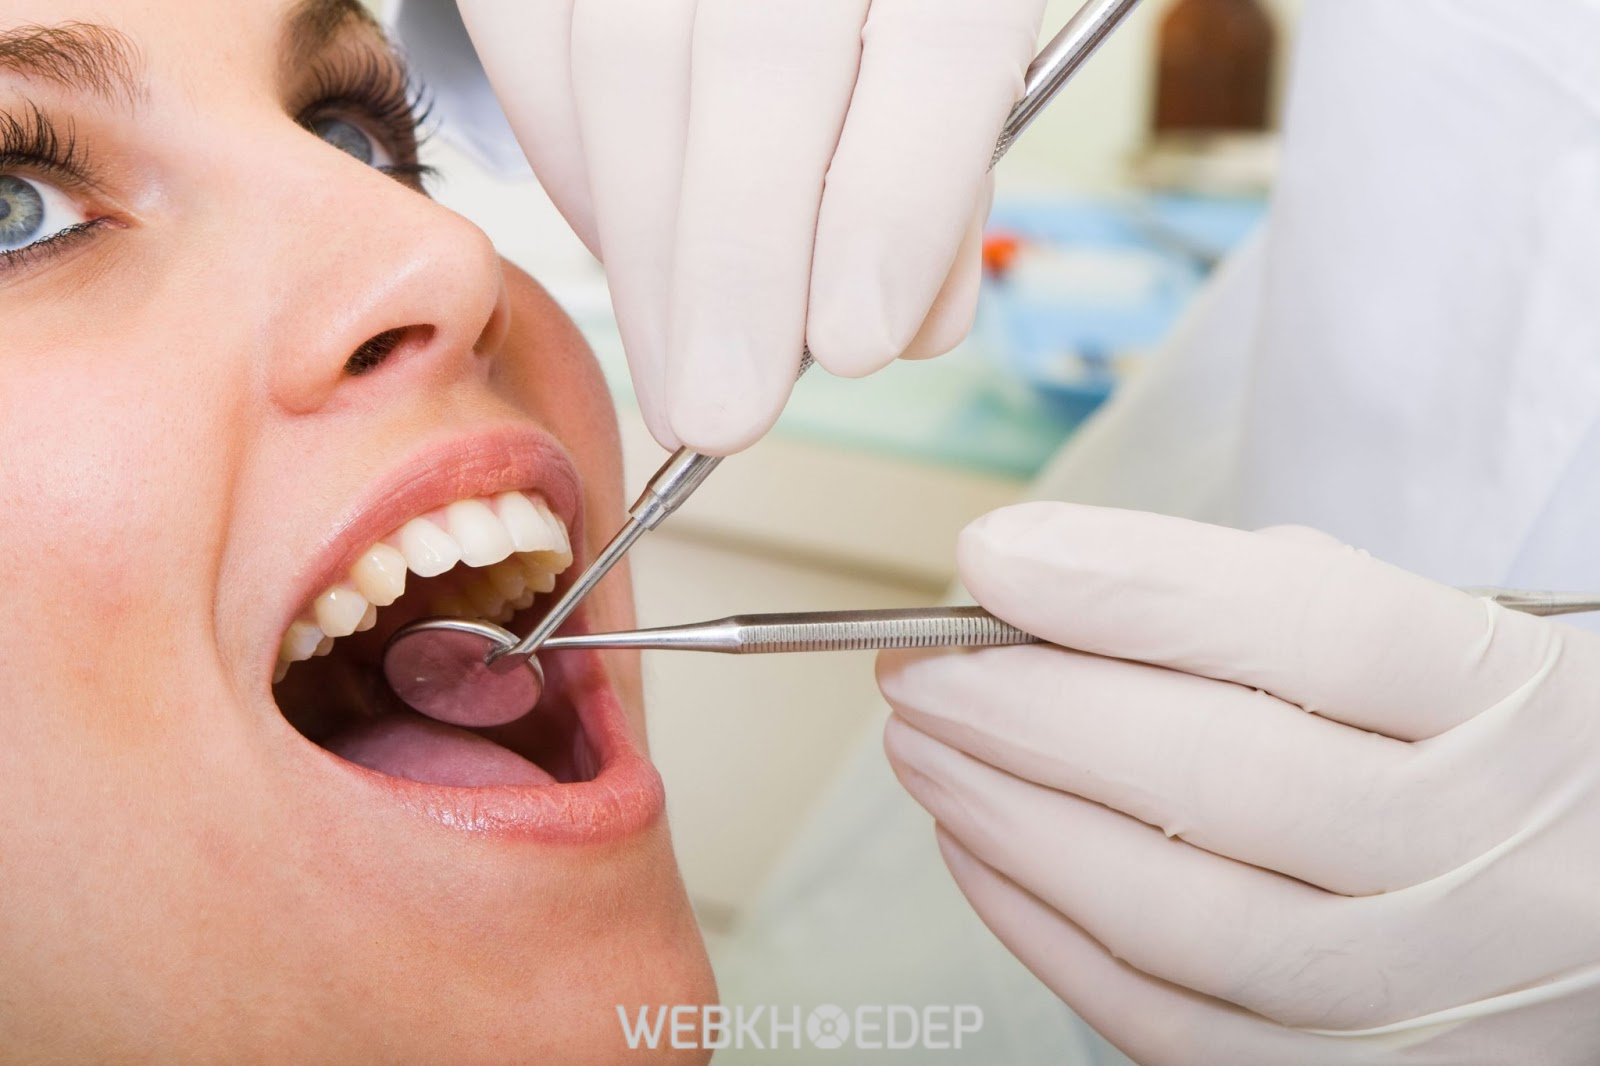 Công nghệ Dr.White kết hợp với công nghệ Plasma 2018 mang lại hiệu quả làm trắng răng mà không gây tổn thương men răng